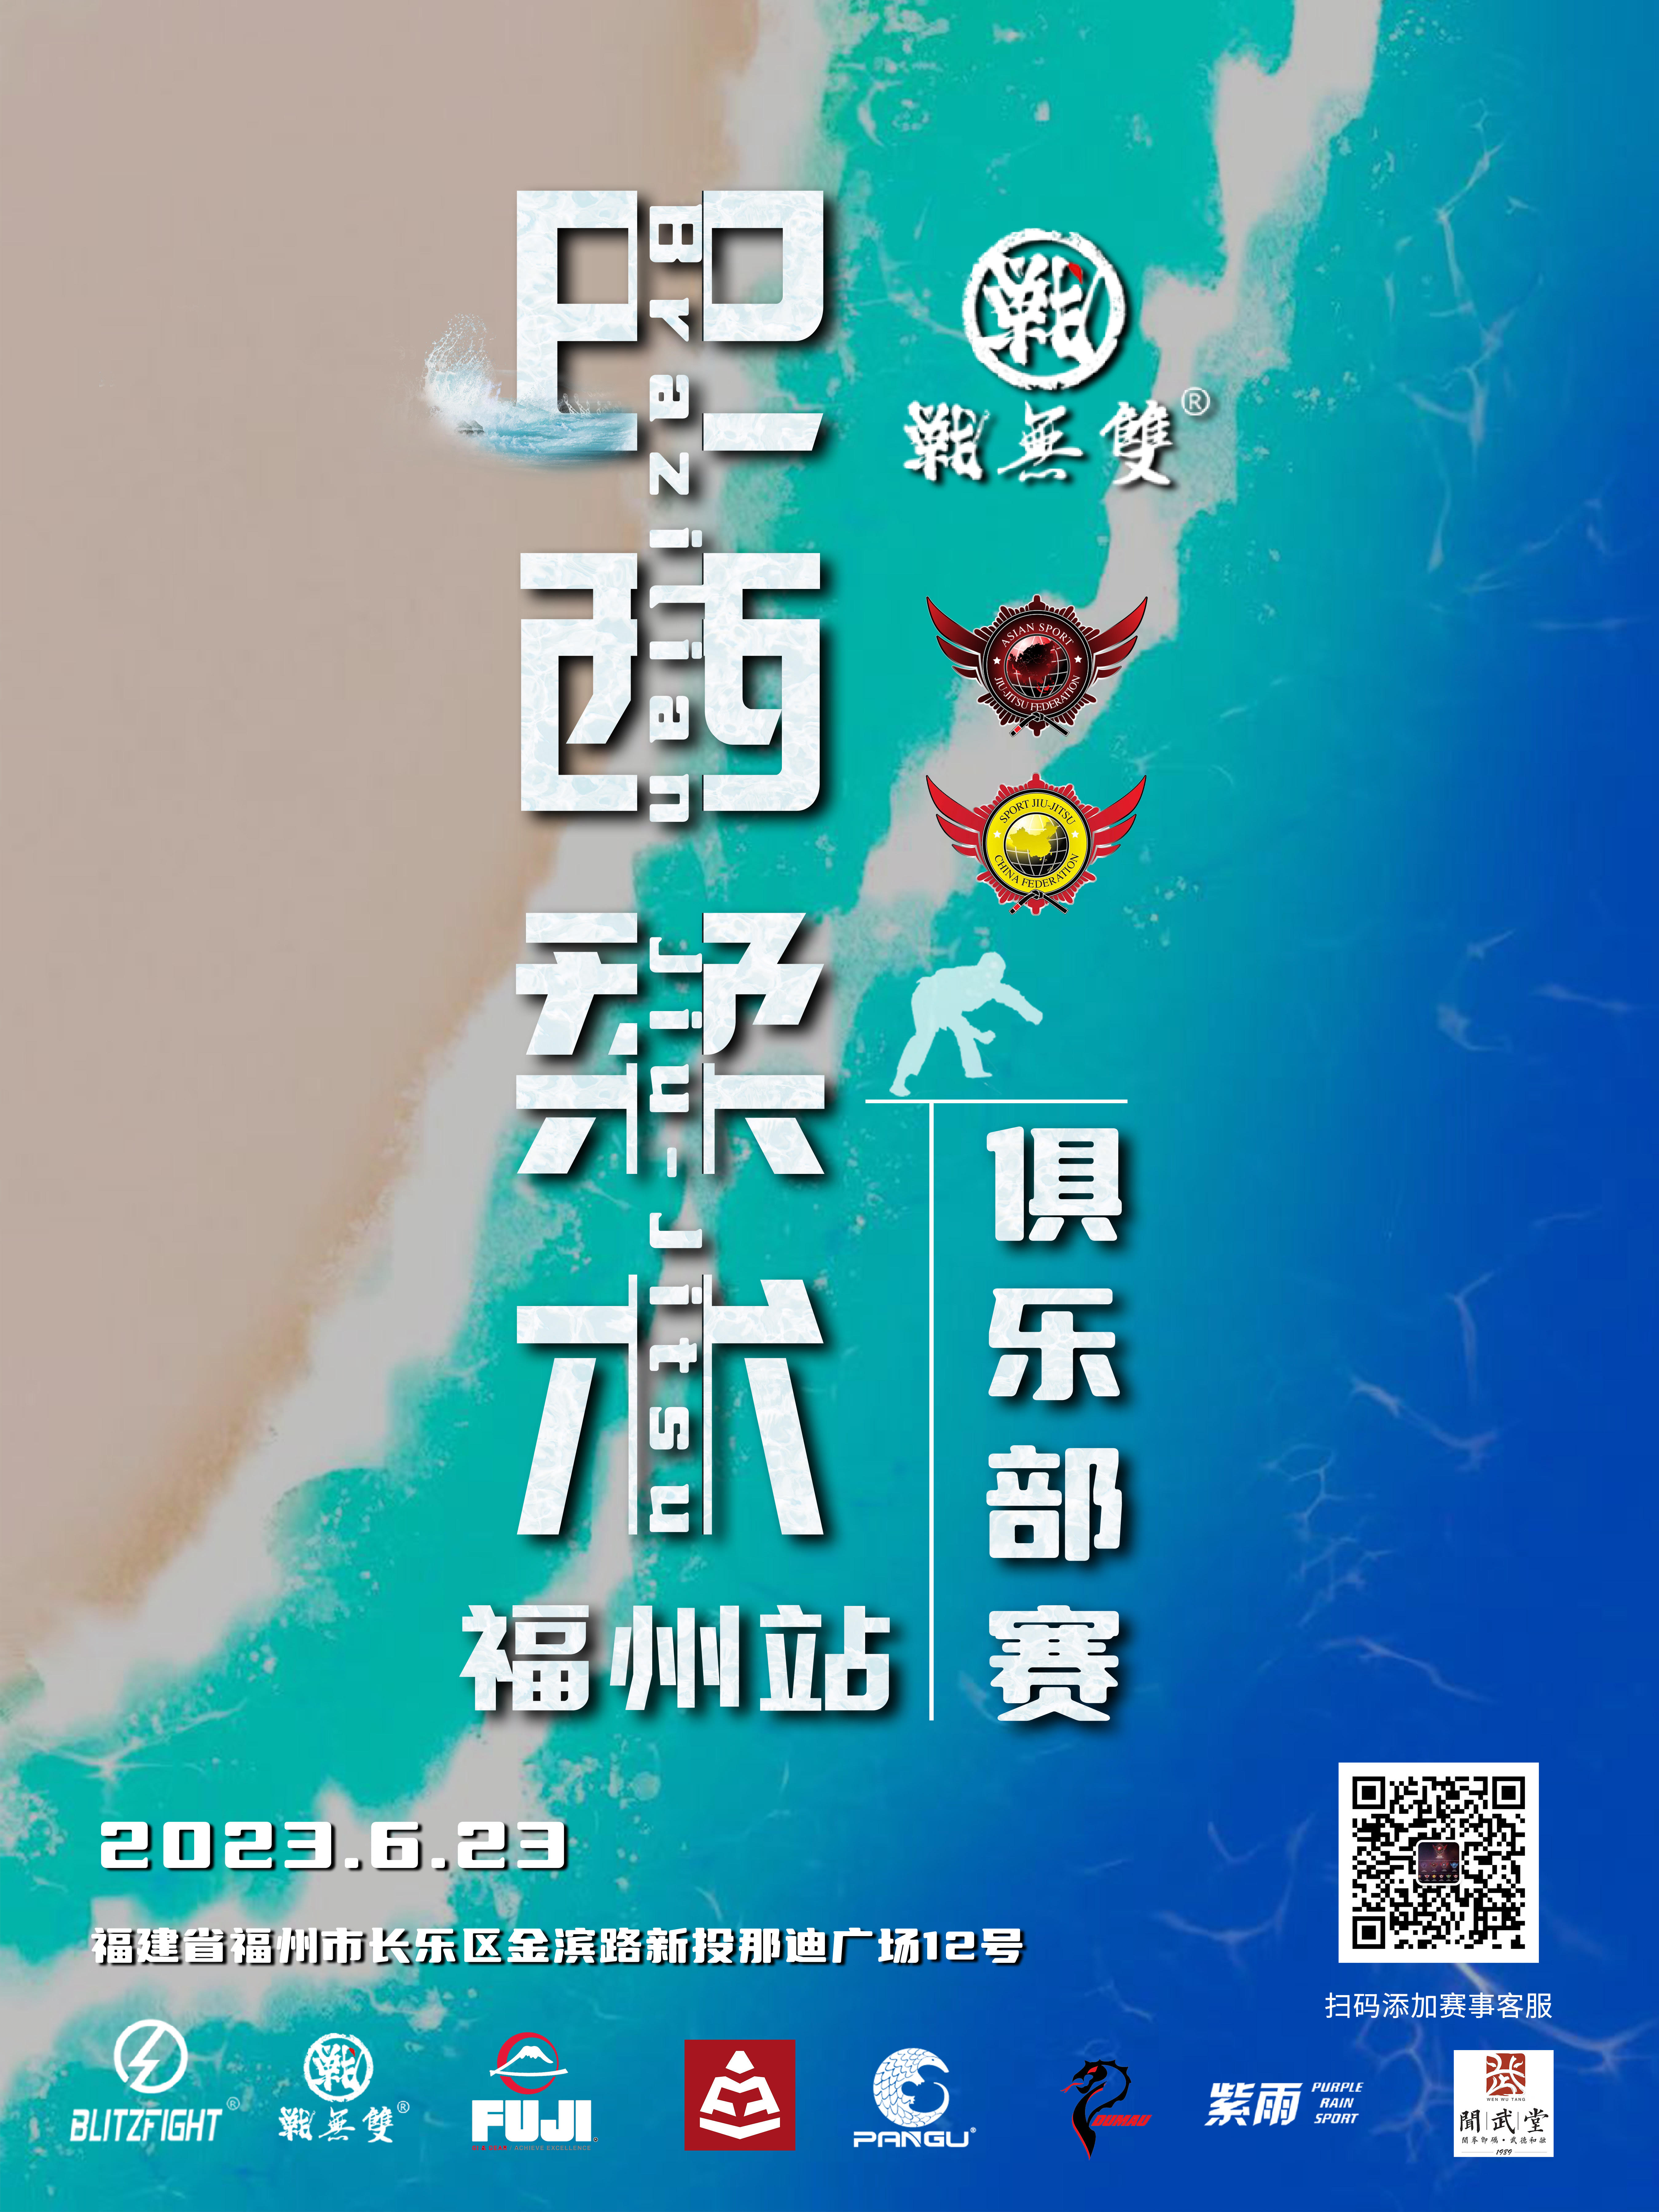 sjjcf fuzhou jiu jitsu championship 2023